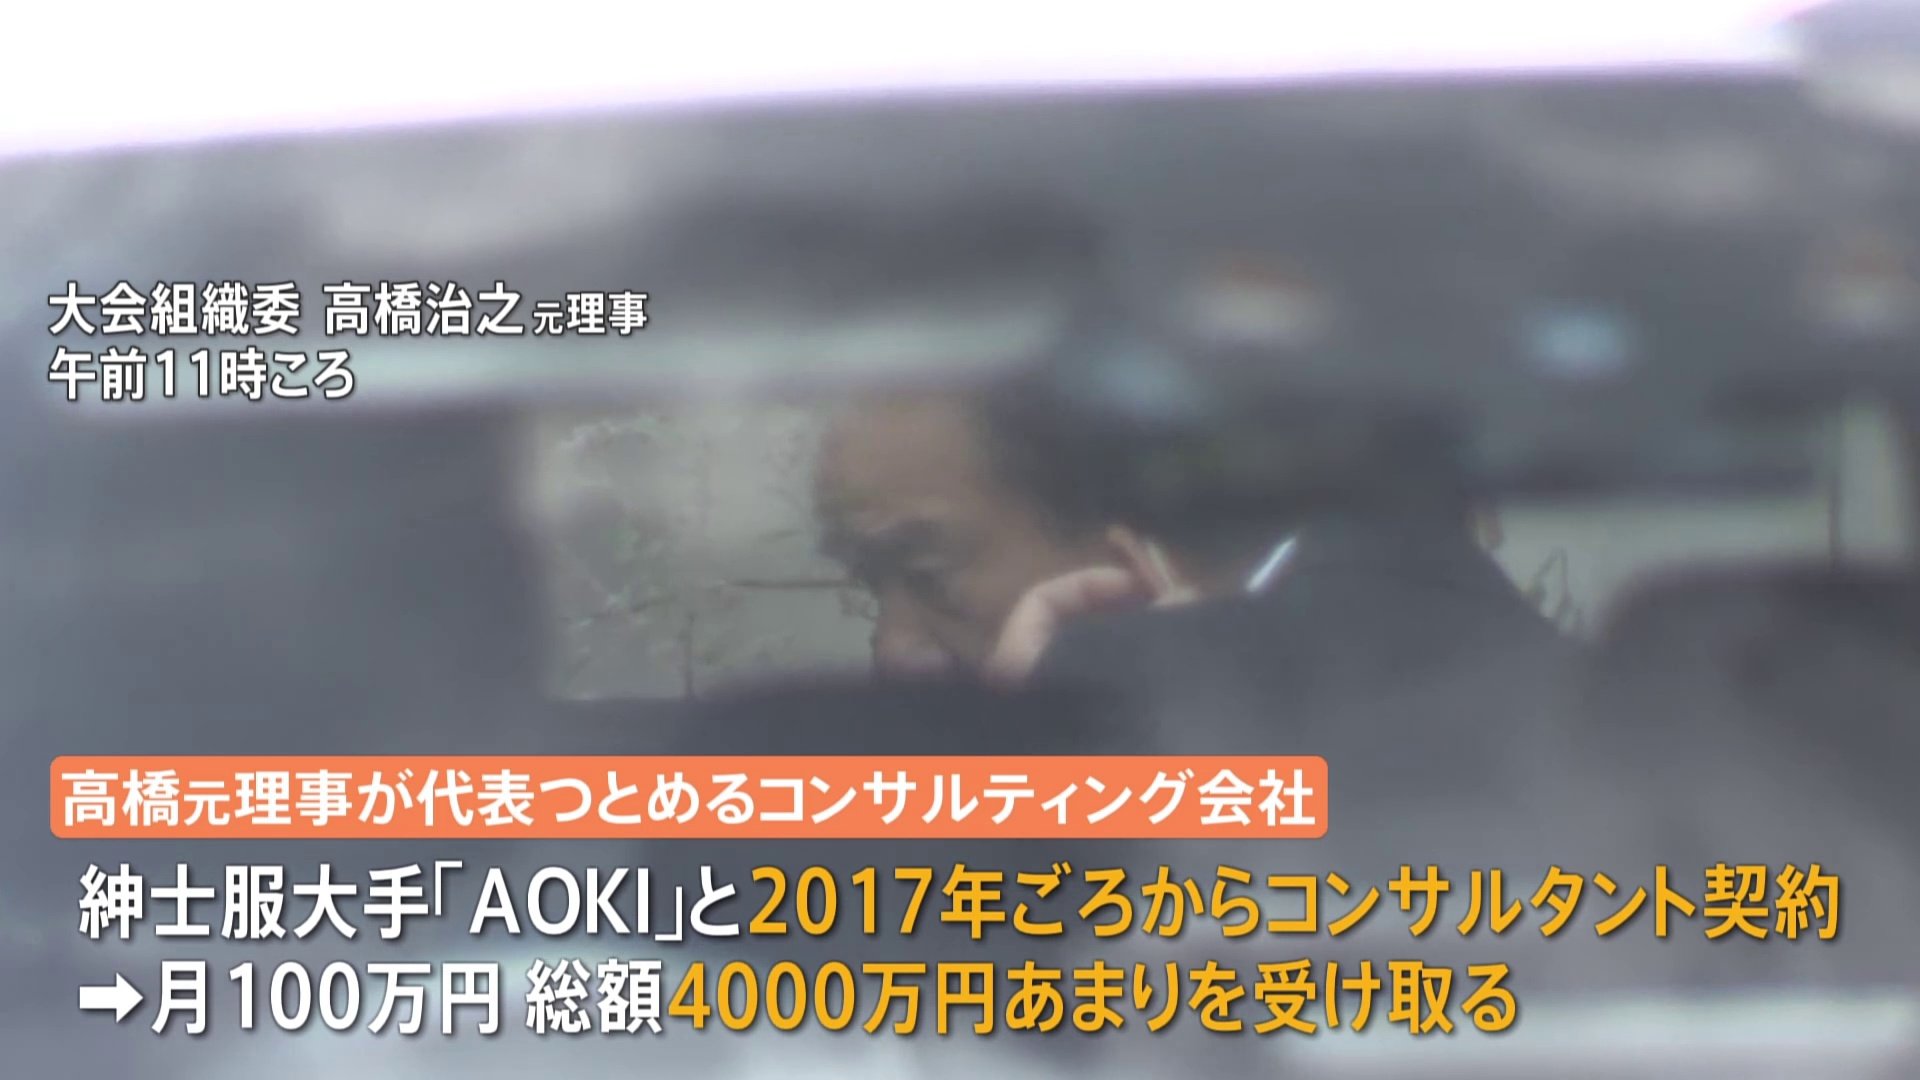 東京オリパラ組織委の元・理事側が大会スポンサーの紳士服大手「AOKI」から4000万円あまり受領か